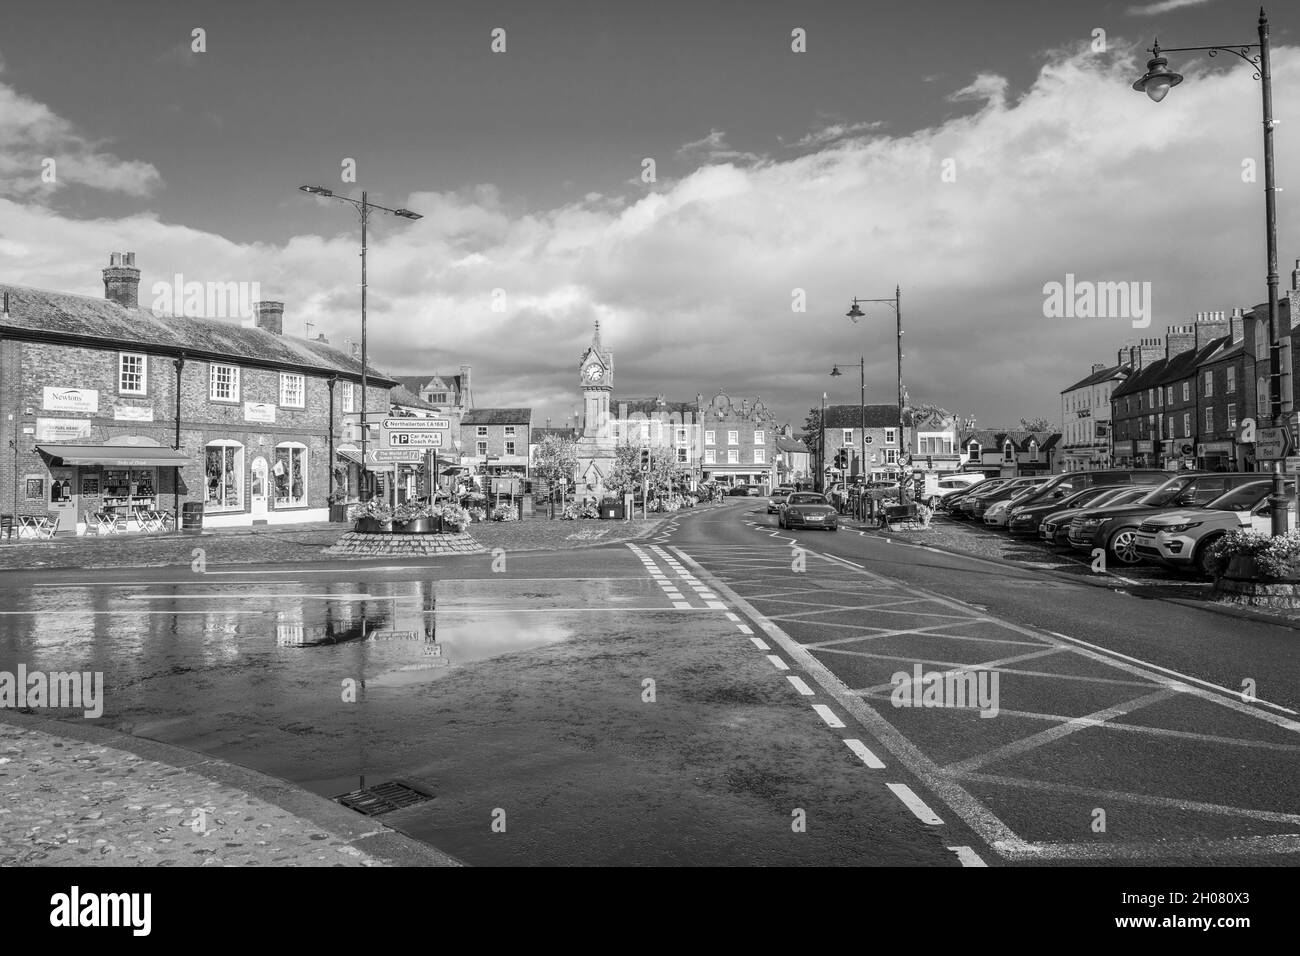 Der Marktplatz in der North Yorkshire Stadt Thirsk. Stockfoto